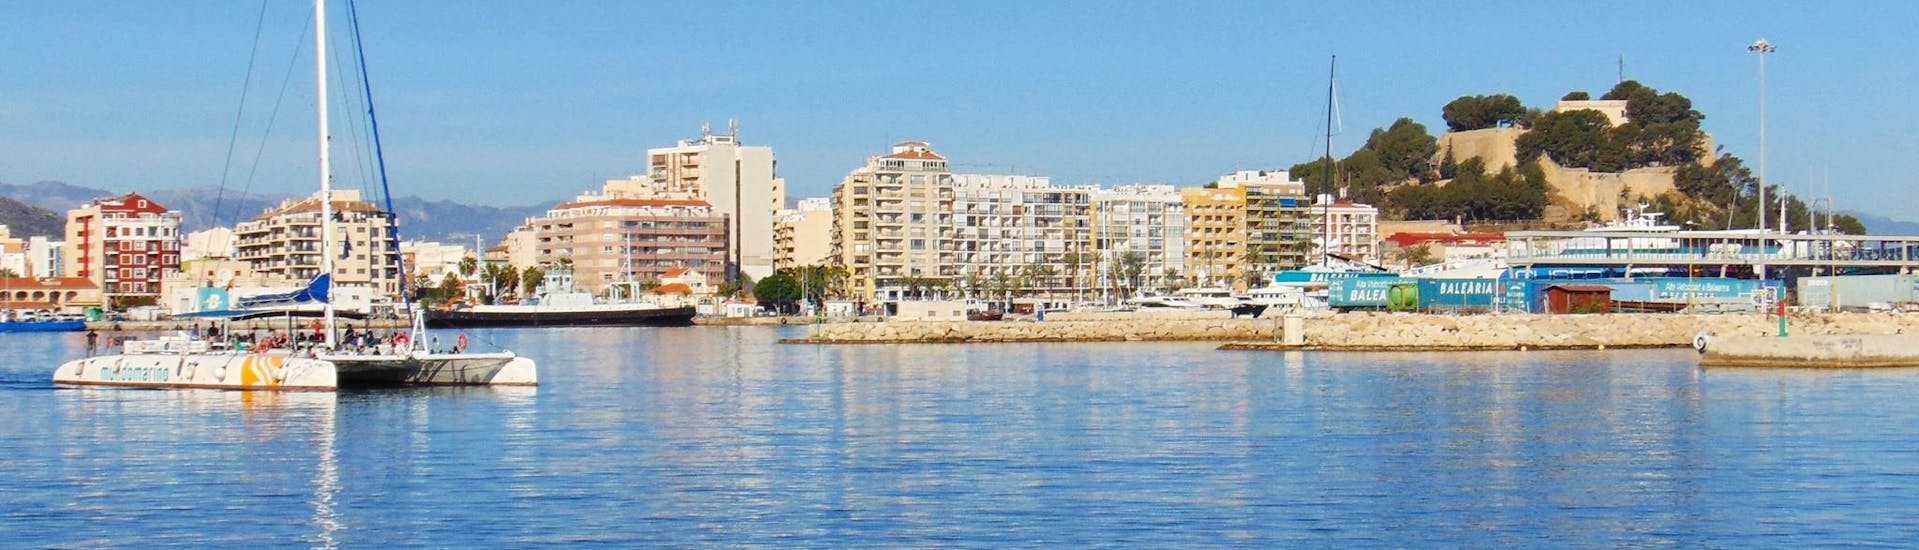 Der elegante und moderne Öko-Segelkatamaran segelt vor dem schönen Hafen von Málaga während eines ganztägigen Bootsausflugs ab Málaga entlang der Costa del Sol mit Mundo Marino Costa del Sol.